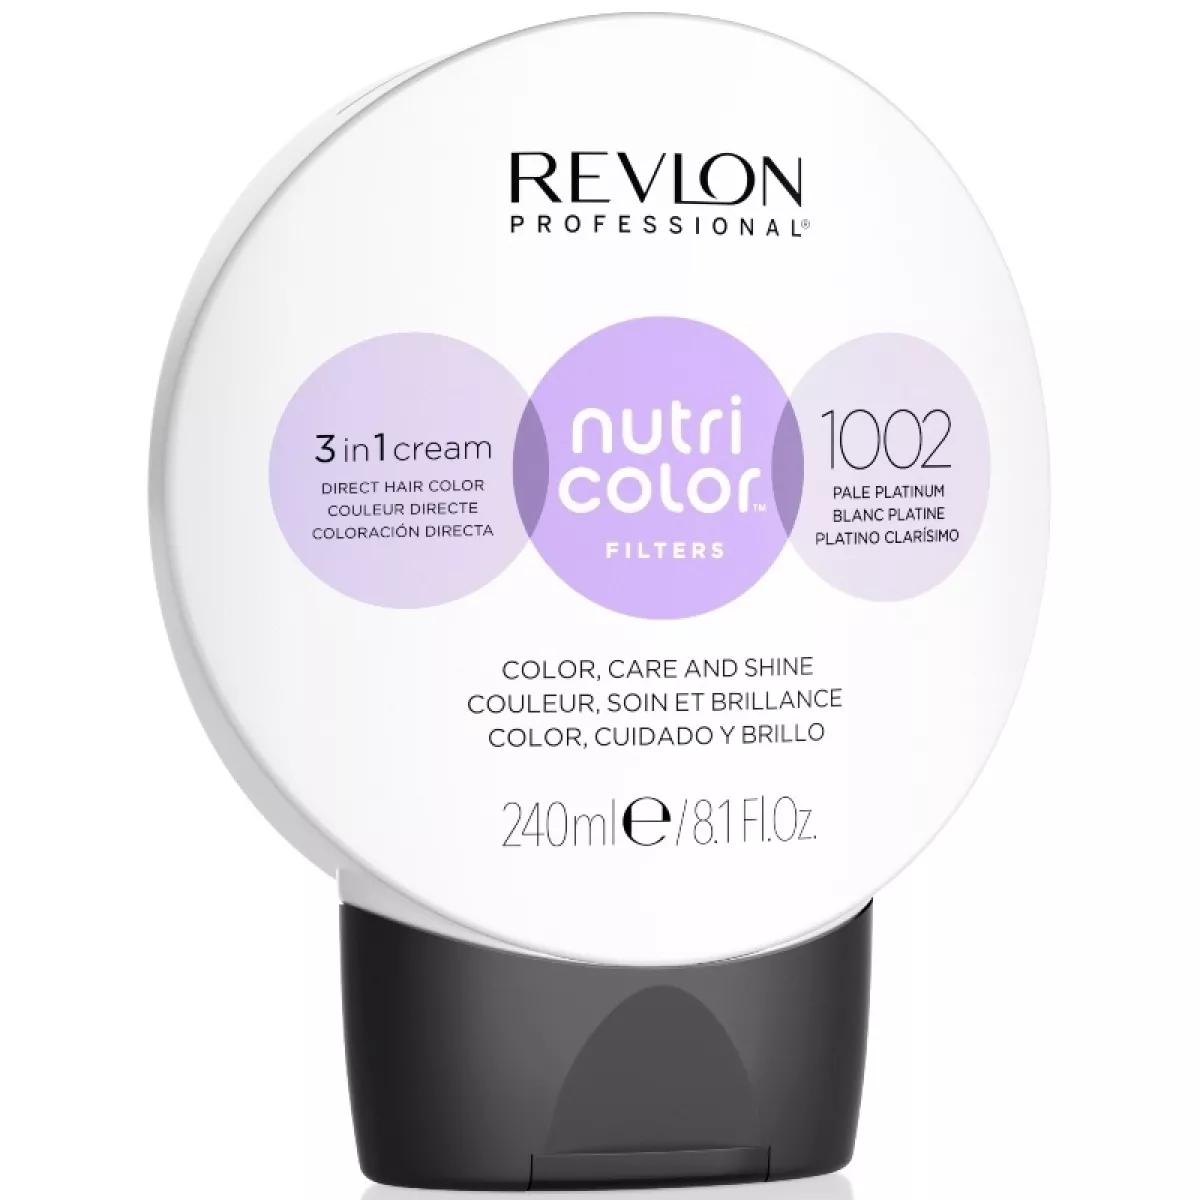 #2 - Revlon Nutri Color Filters 240 ml - 1002 Pale Platinum